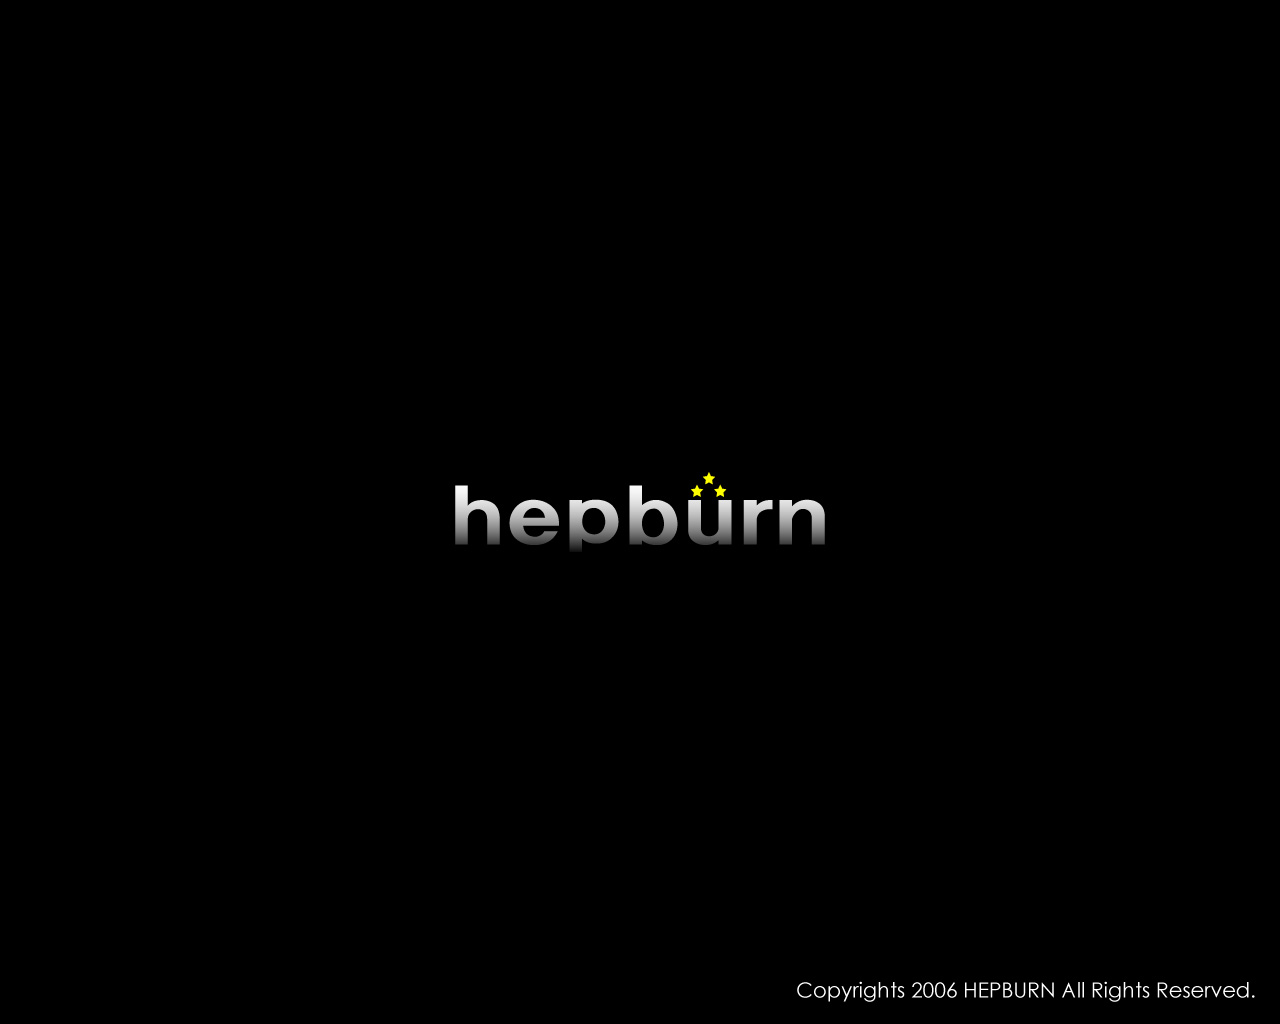 HEPBURNǎ02